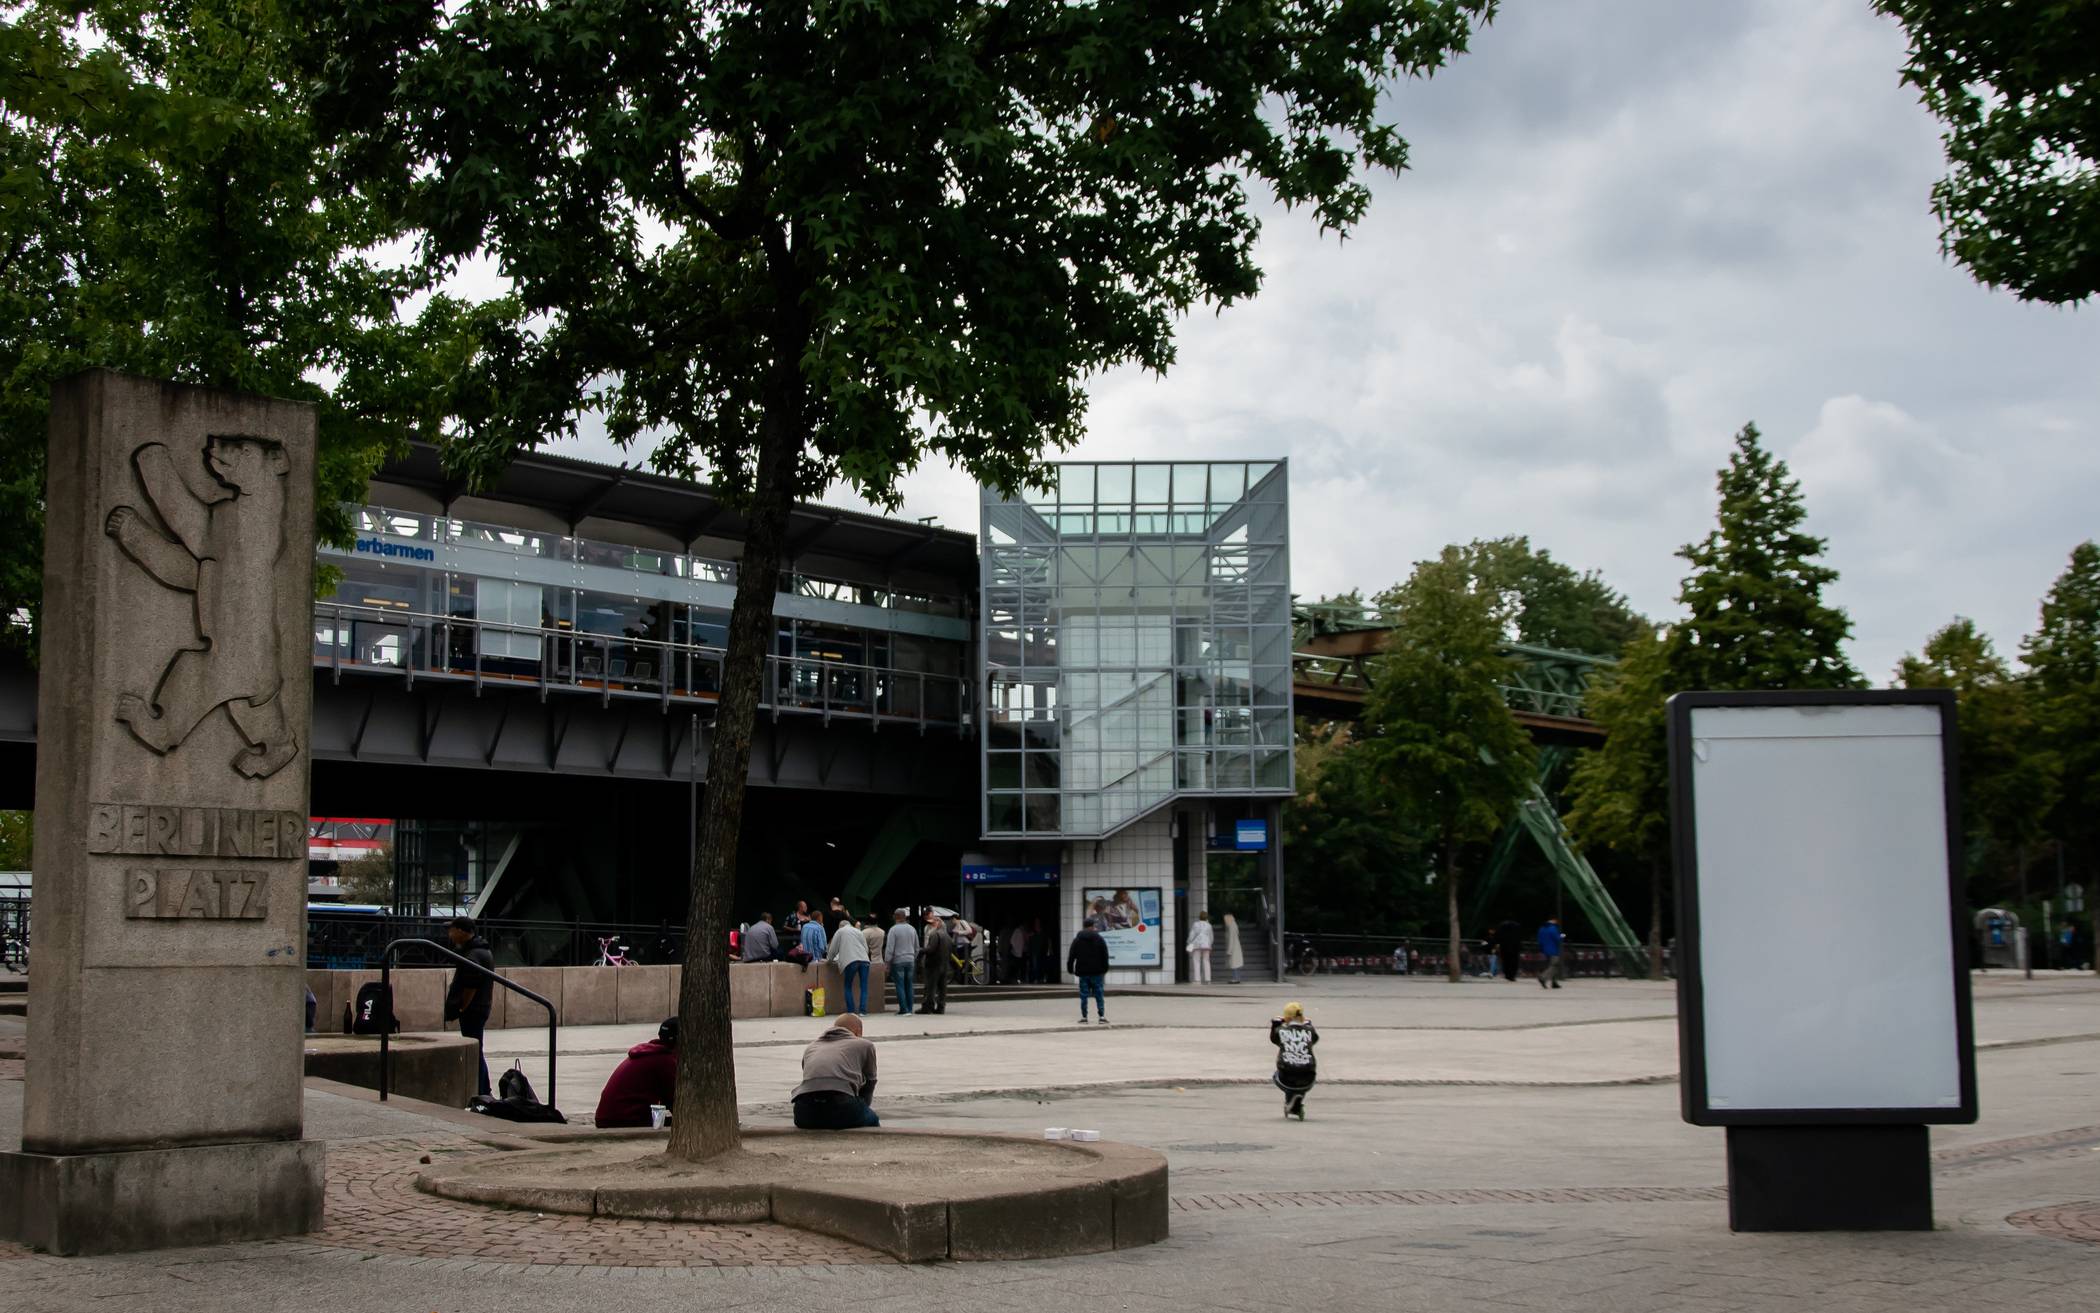  Der Berliner Platz in Wuppertal Oberbarmen wird von der Polizei als „gefährlicher Ort“ eingestuft. Auch hier zeigt die Polizei verstärkt Präsenz und kontrollierte in letzter Zeit immer wieder die ansässigen Shisha-Bars, Wettbuden und Spielhallen. 